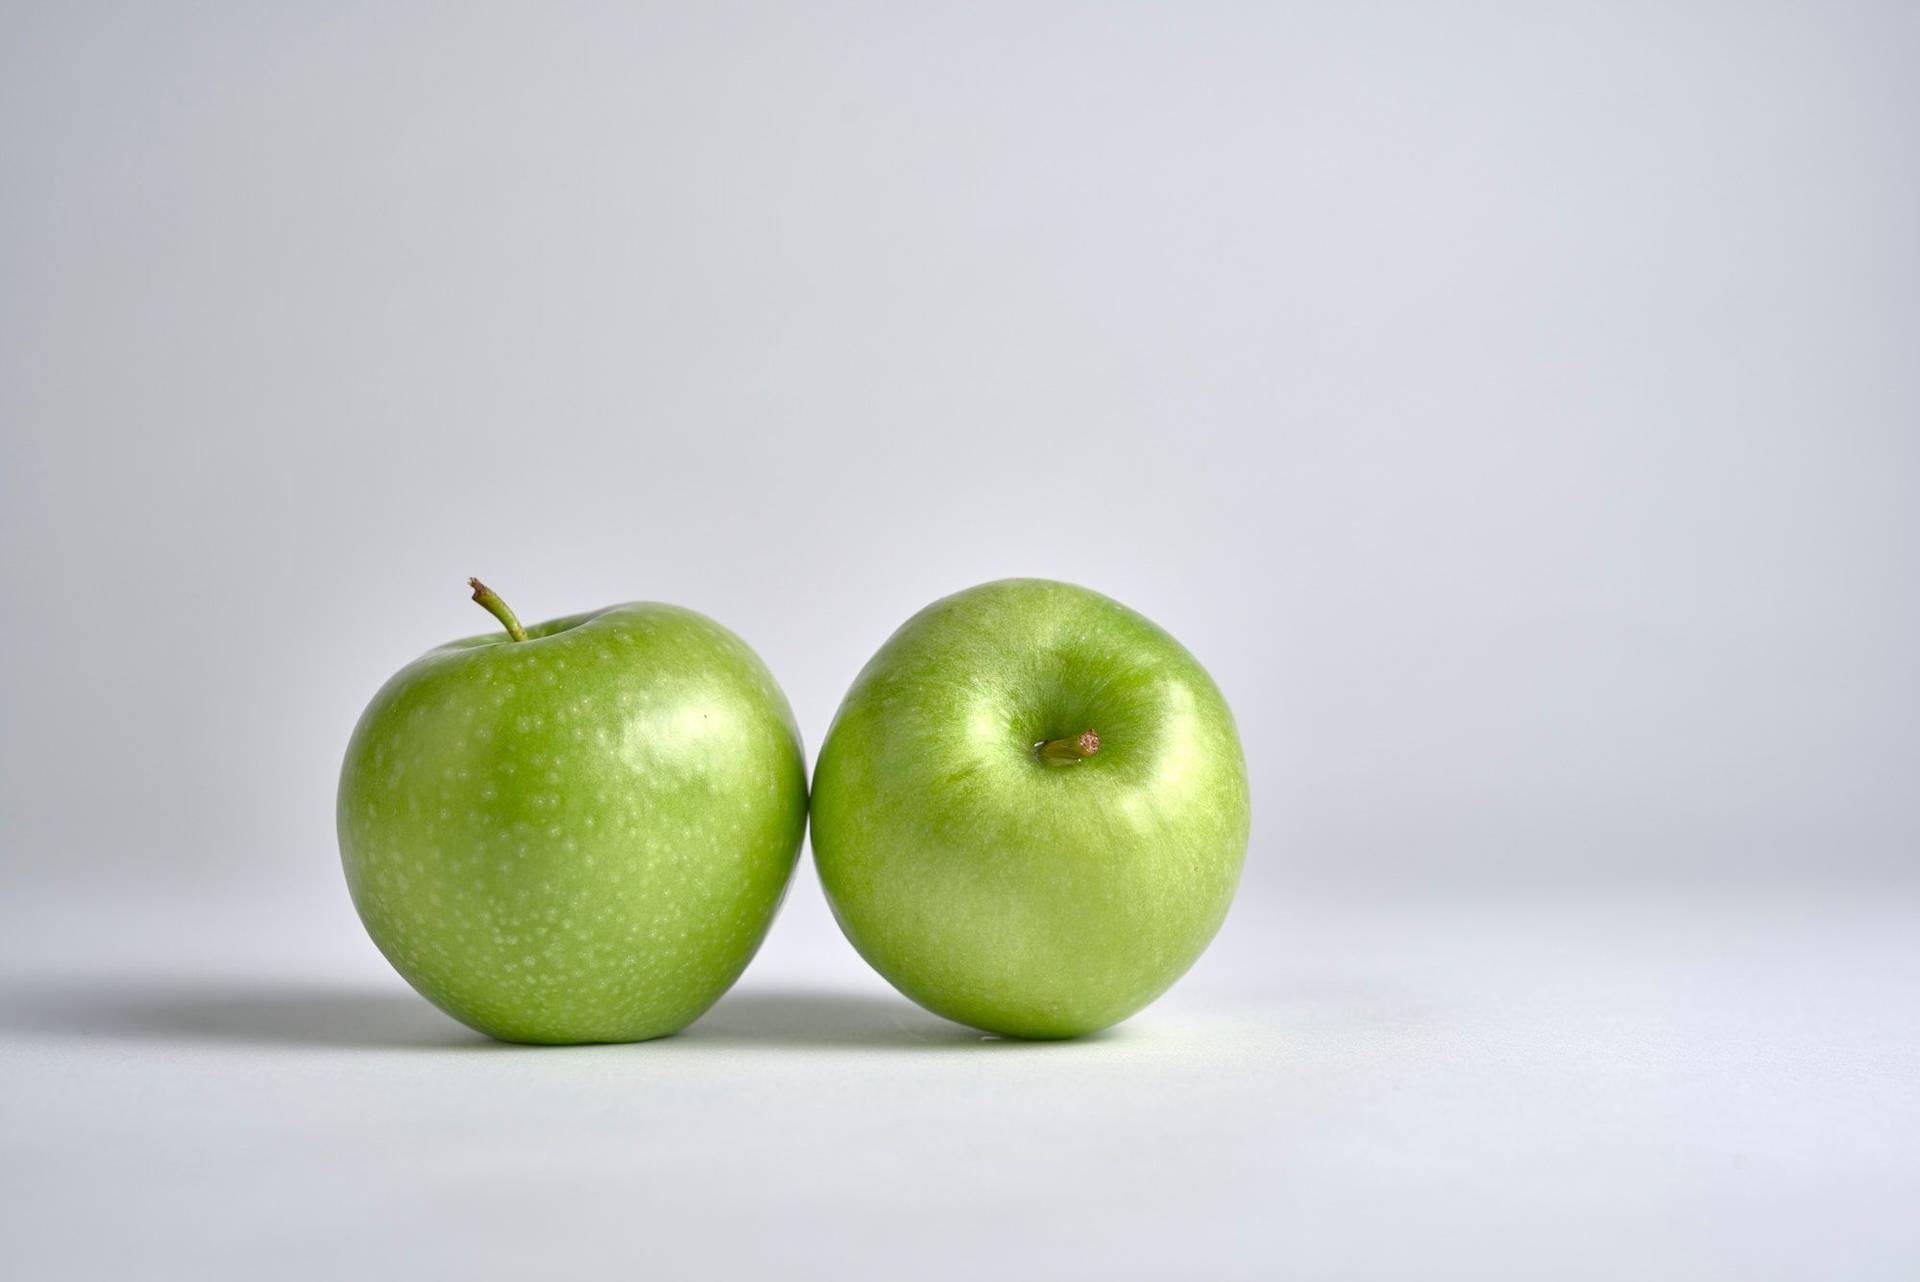 zwei grüne äpfel mit weißem hintergrund